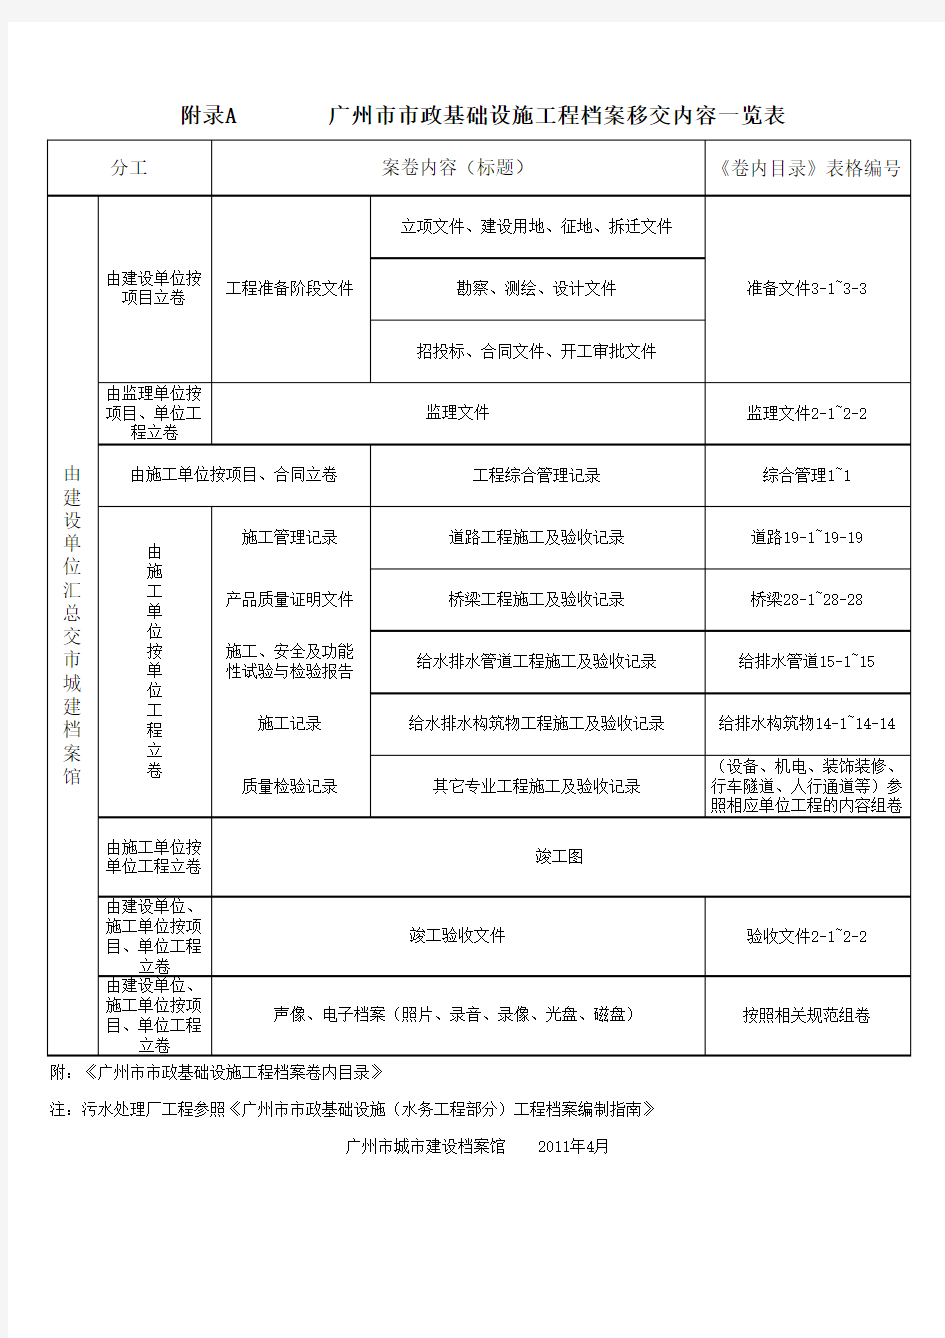 广州2010市政归档指南-附录A        广州市市政基础设施工程档案移交内容一览表